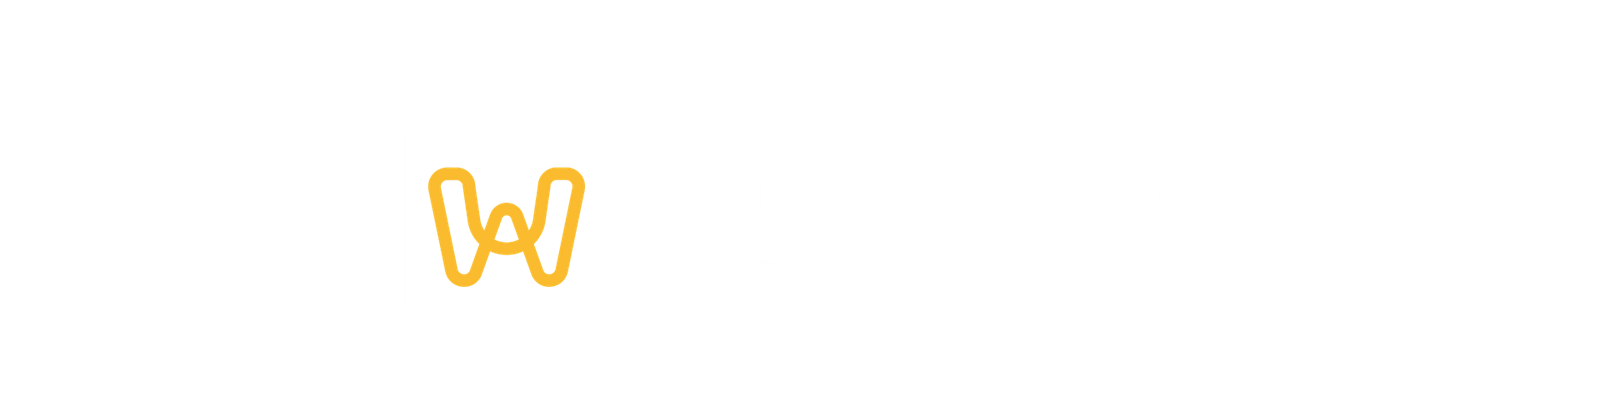 Win Market Agency Blog